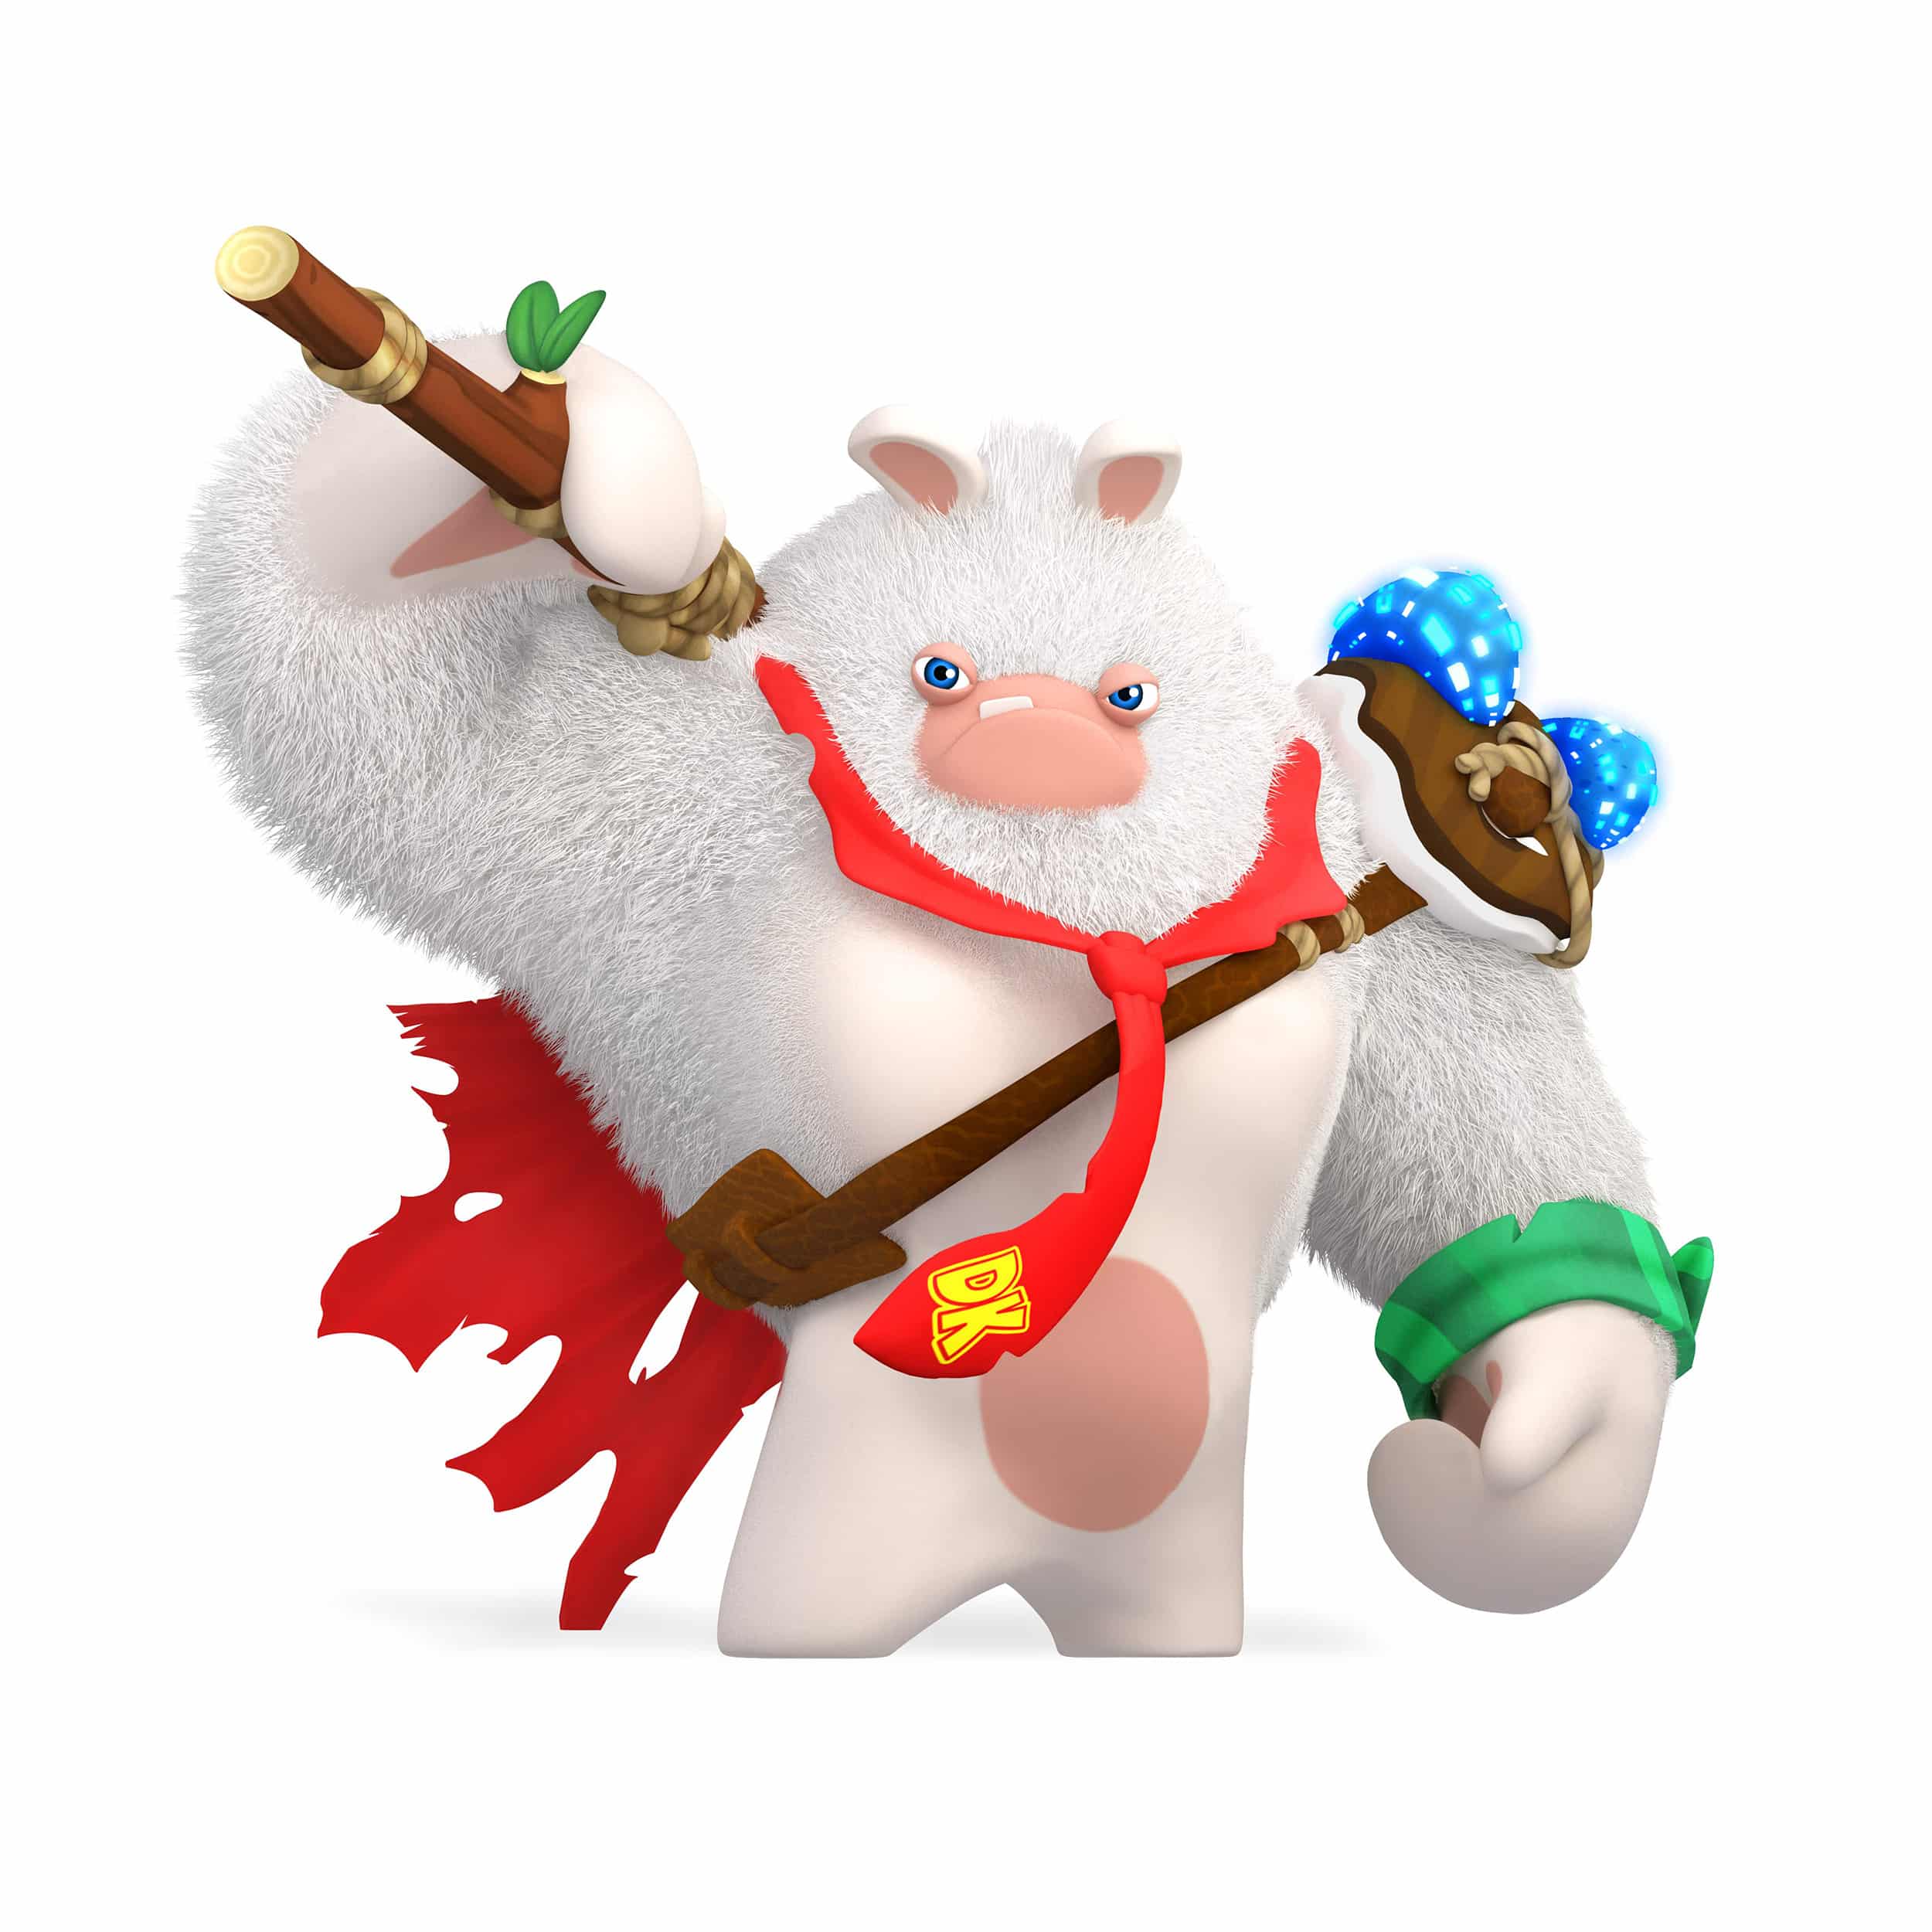 Mario + Rabbids Kingdom Battle Character Render 1 - 2500 x 2500 jpeg 749kB